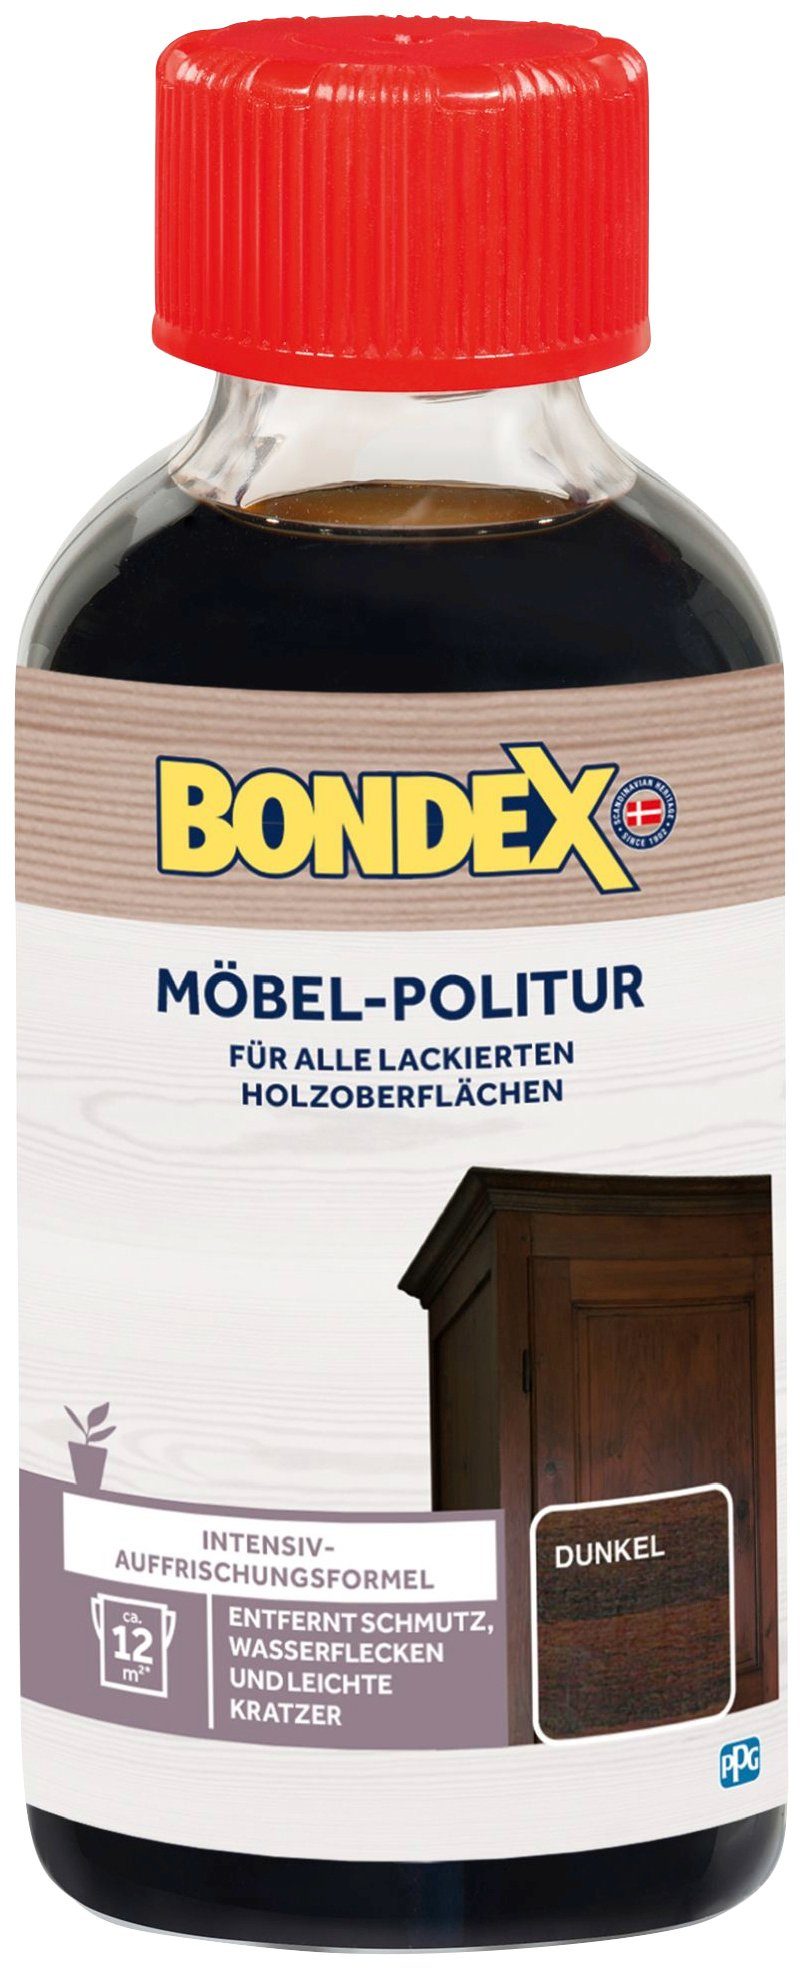 Bondex Dunkel l Holzpflegeöl, 0,15 MÖBEL-POLITUR